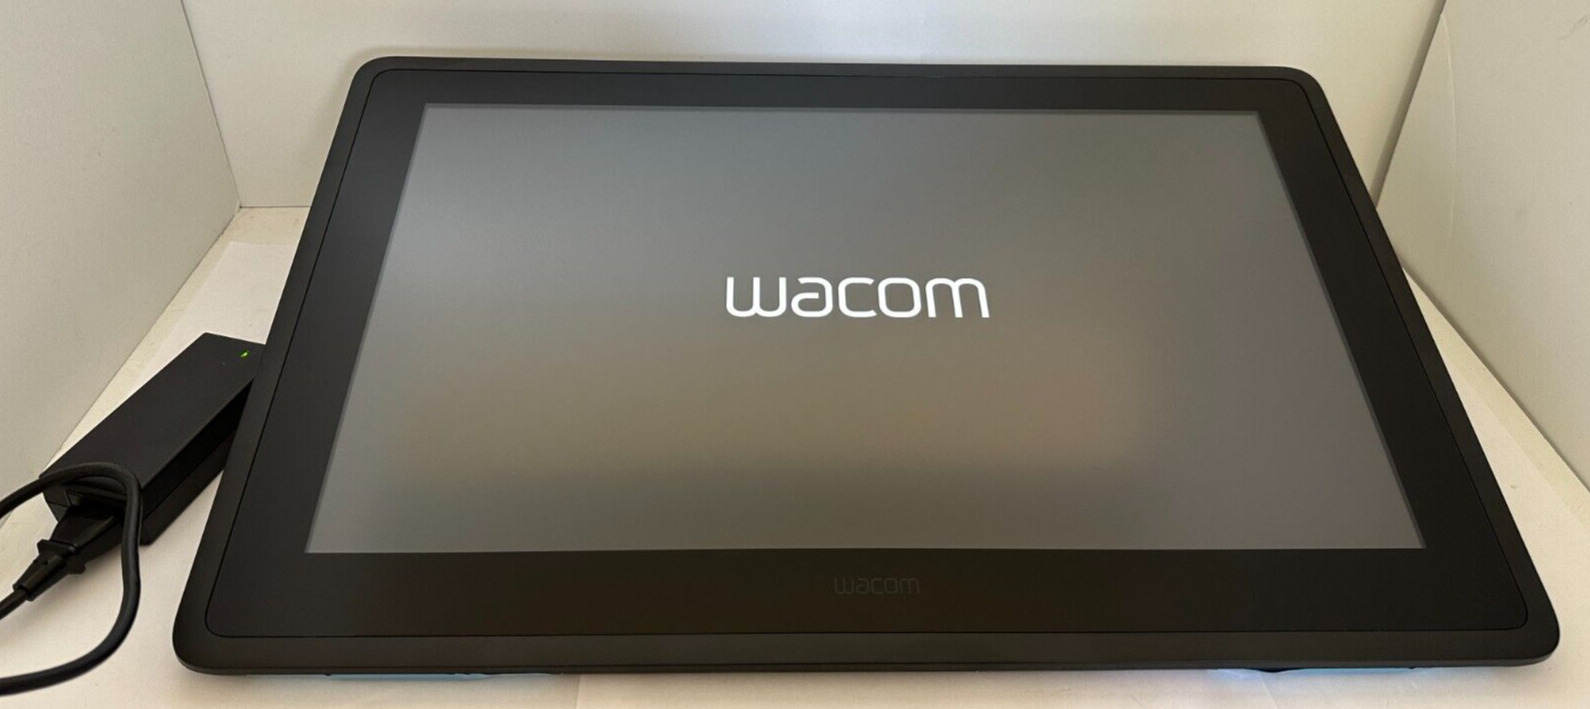 Wacom Cintiq 22 Creative Pen Display Tablet - DTK2260K0A